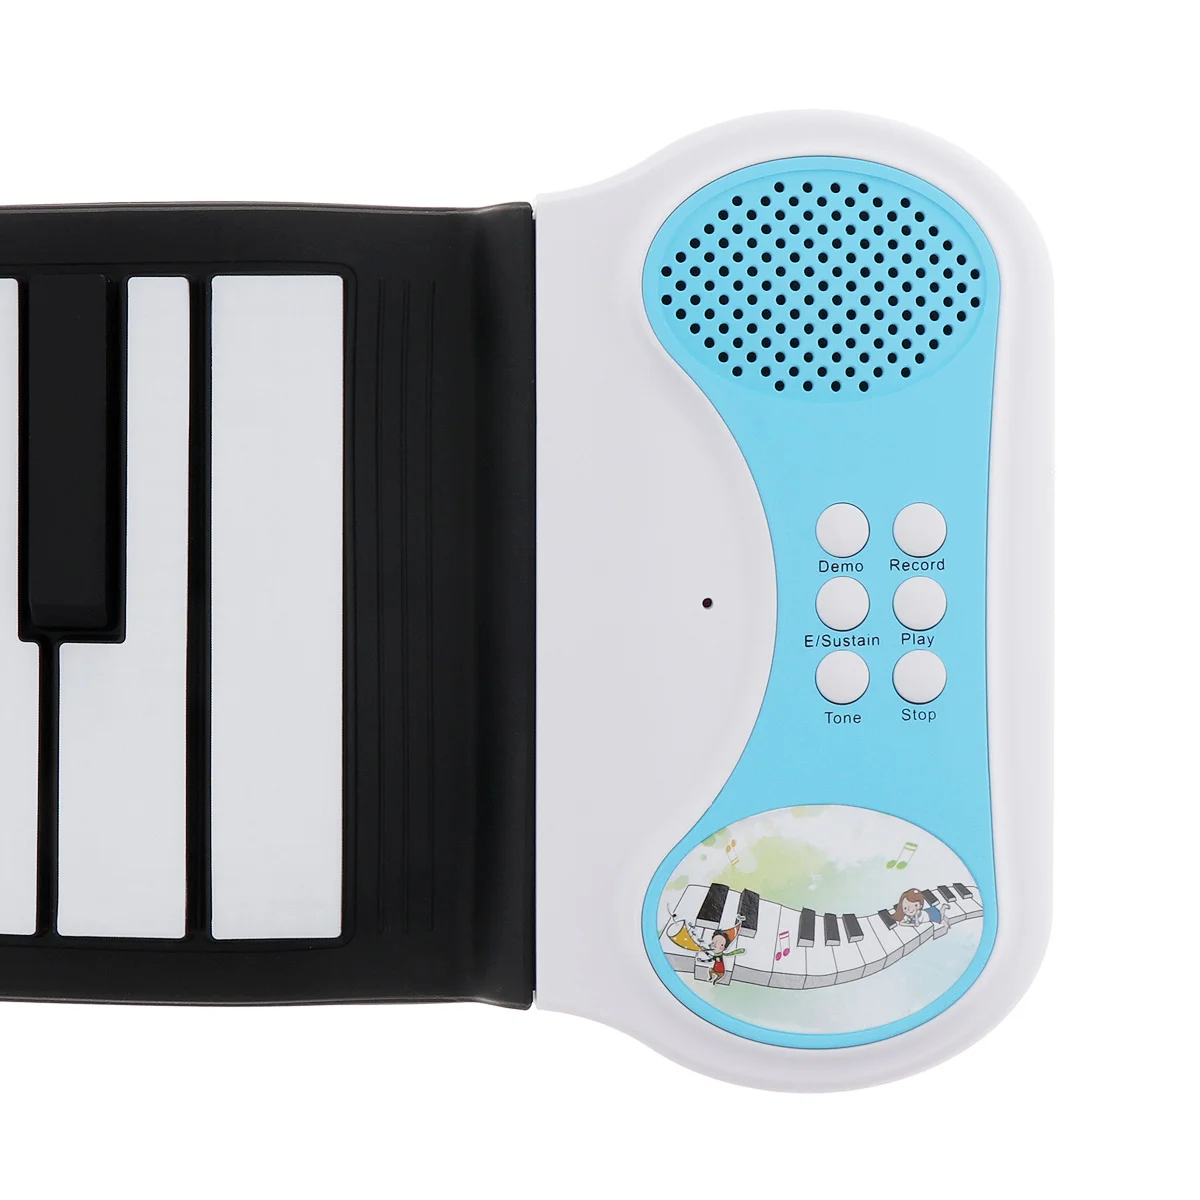 49 ключ профессиональный кремния Гибкая рука Roll Up пианино электронная клавиатура для детей, подростков и студентов музыка производительность и обучение